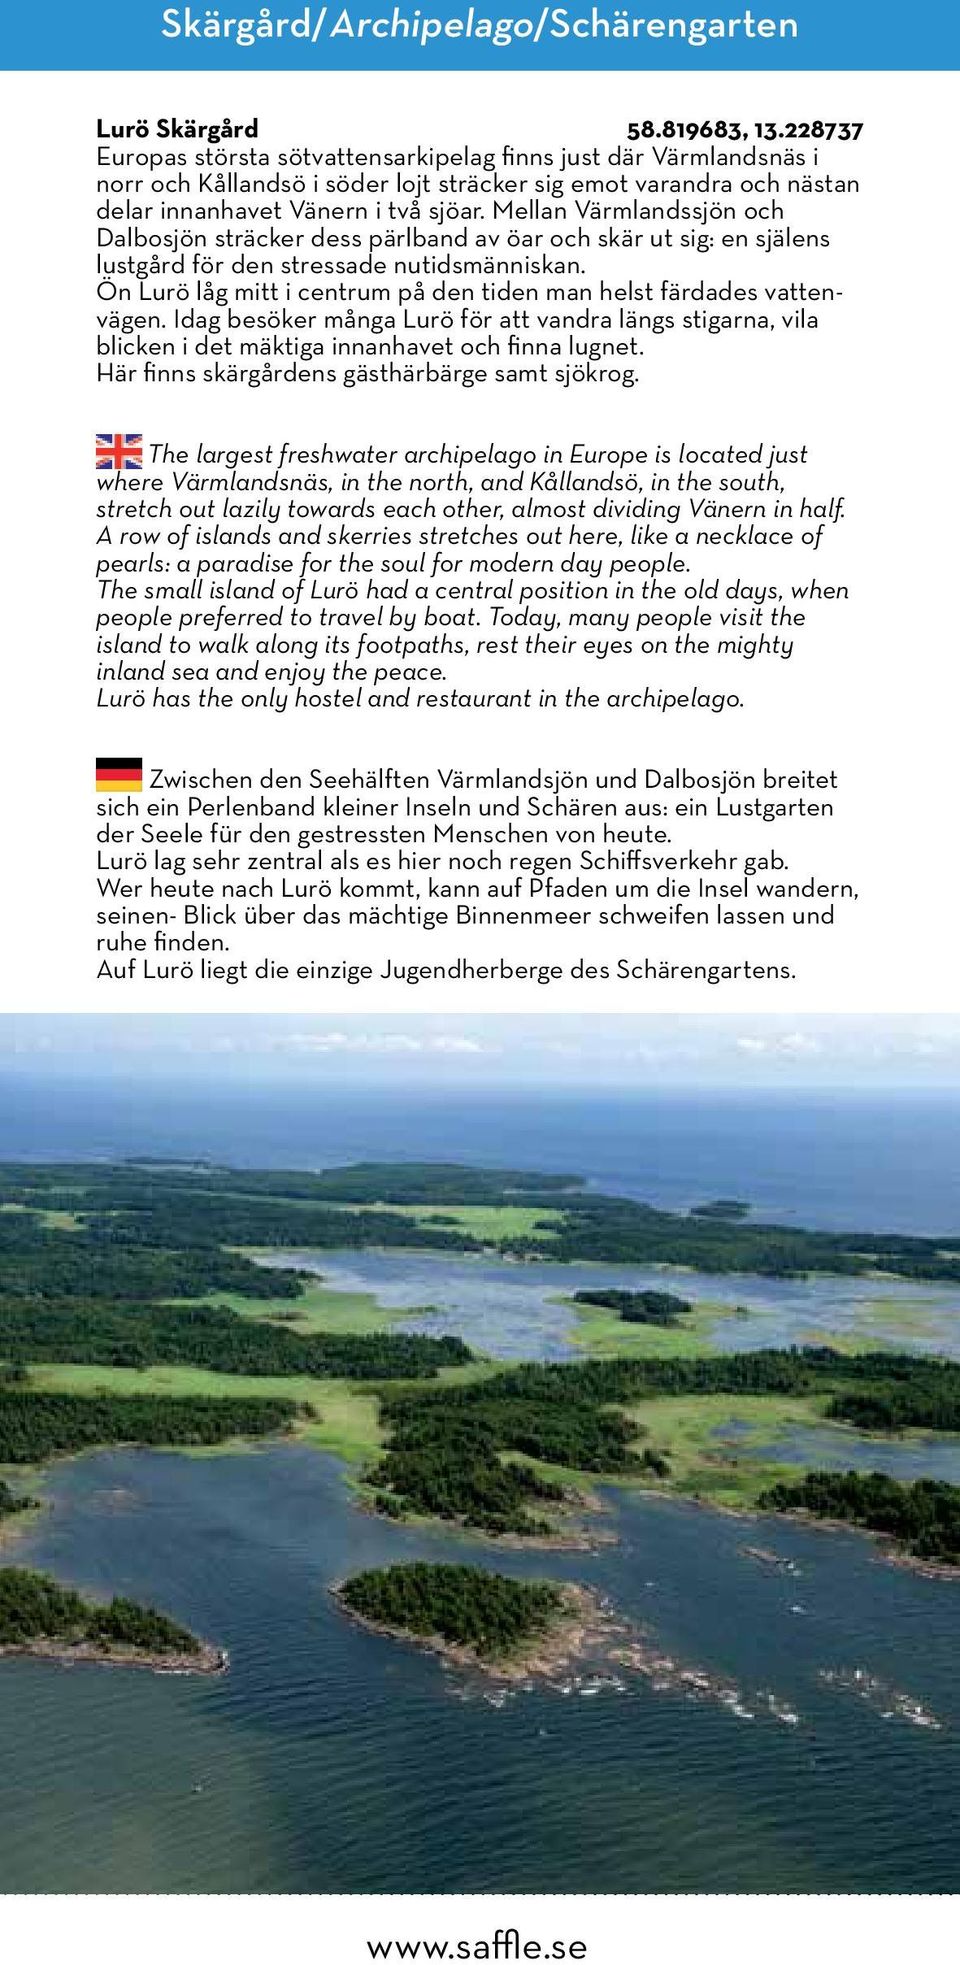 Mellan Värmlandssjön och Dalbosjön sträcker dess pärlband av öar och skär ut sig: en själens lustgård för den stressade nutidsmänniskan.